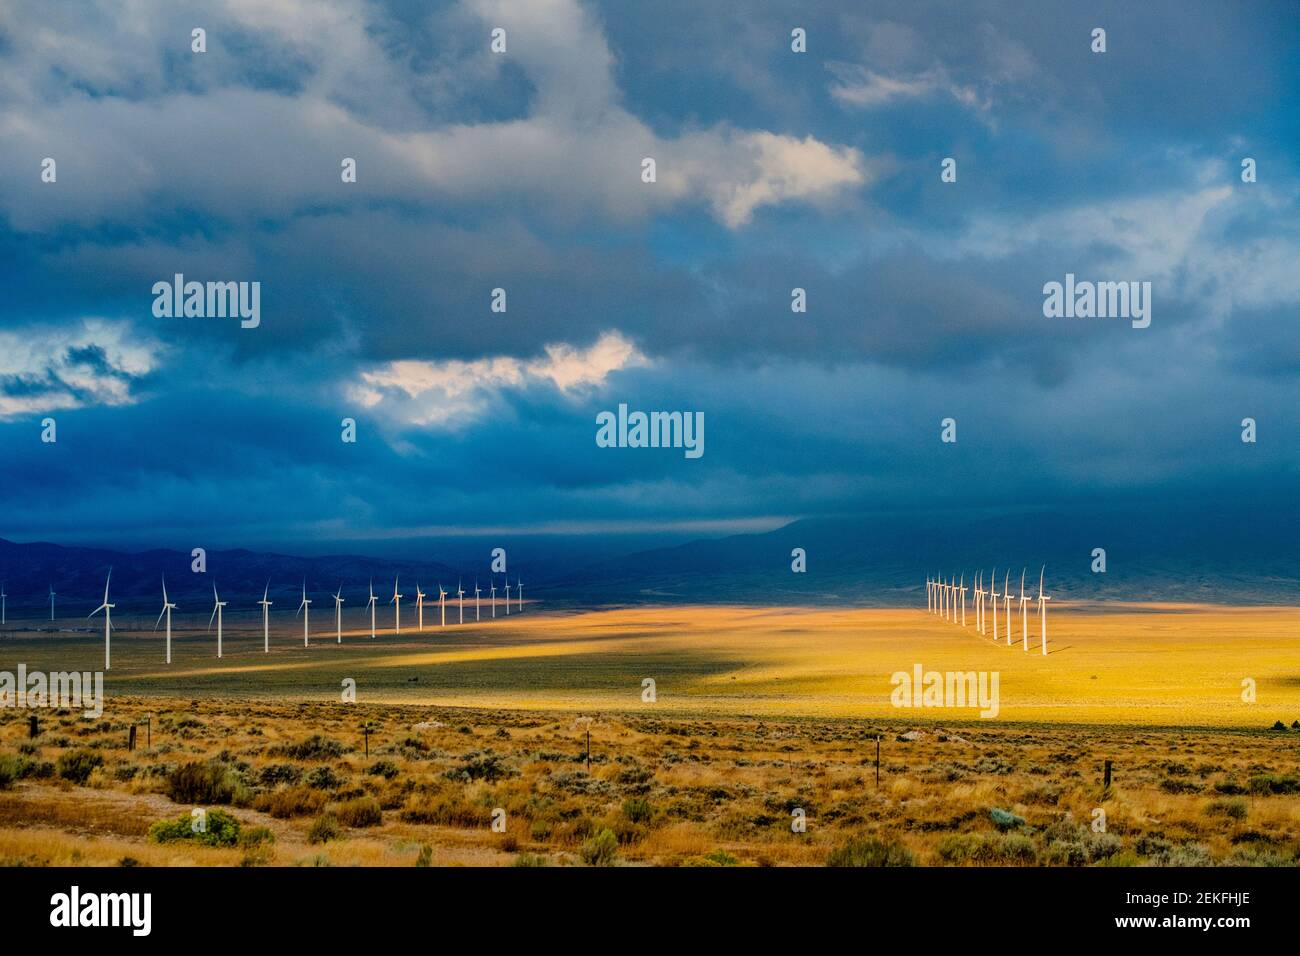 Éoliennes, parc national de Great Basin, Nevada, États-Unis Banque D'Images